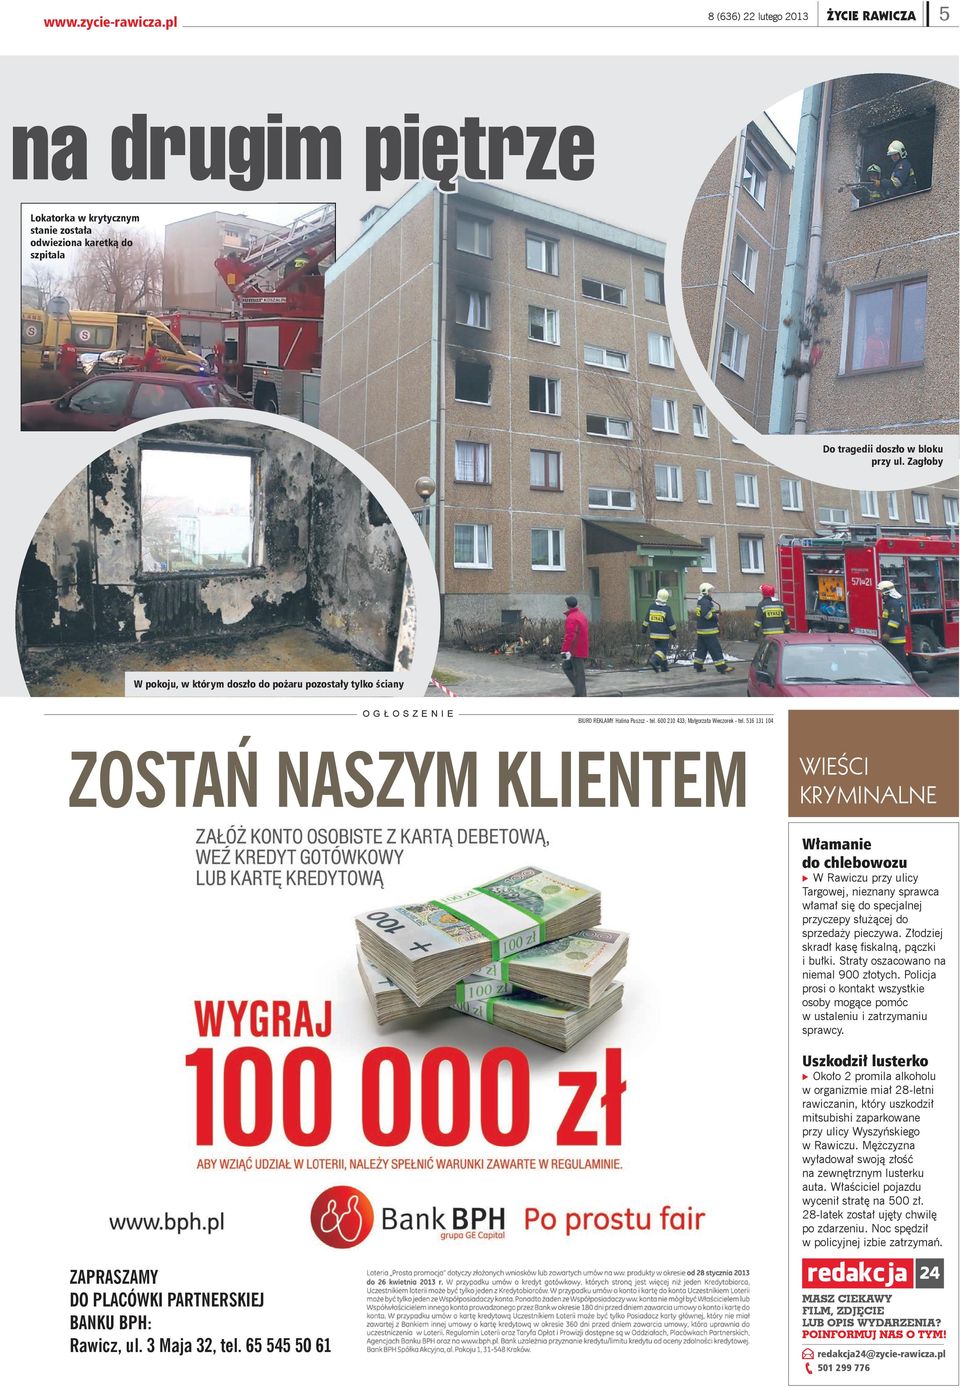 516 131 104 WIEŚCI KRYMINALNE Włamanie do chlebowozu 9 W Rawiczu przy ulicy Targowej, nieznany sprawca włamał się do specjalnej przyczepy służącej do sprzedaży pieczywa.